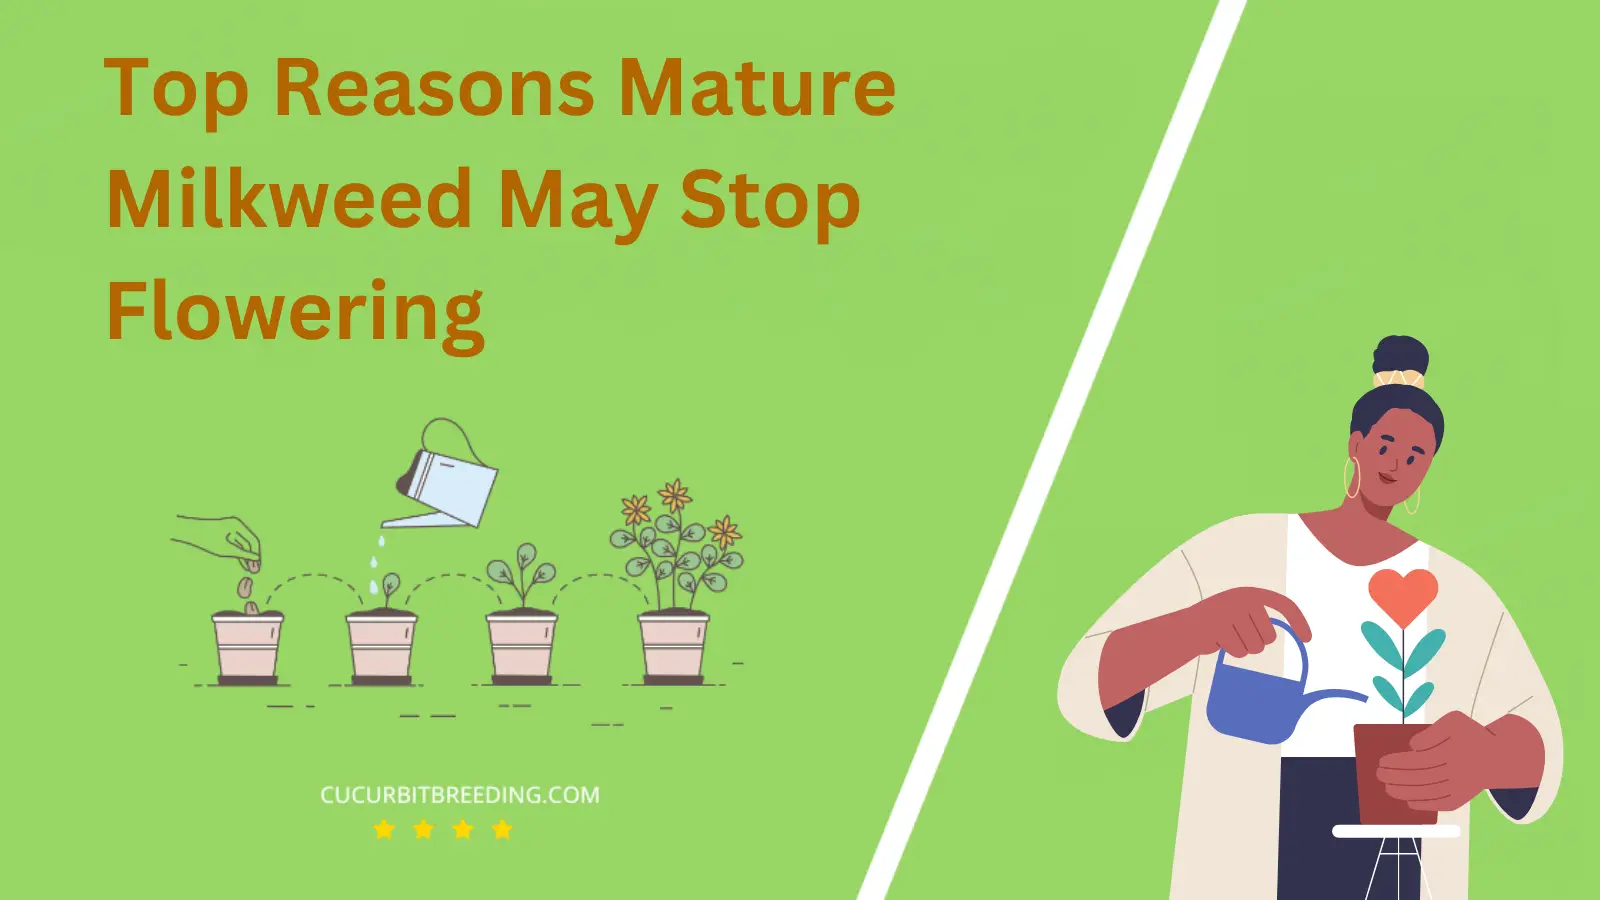 Top Reasons Mature Milkweed May Stop Flowering